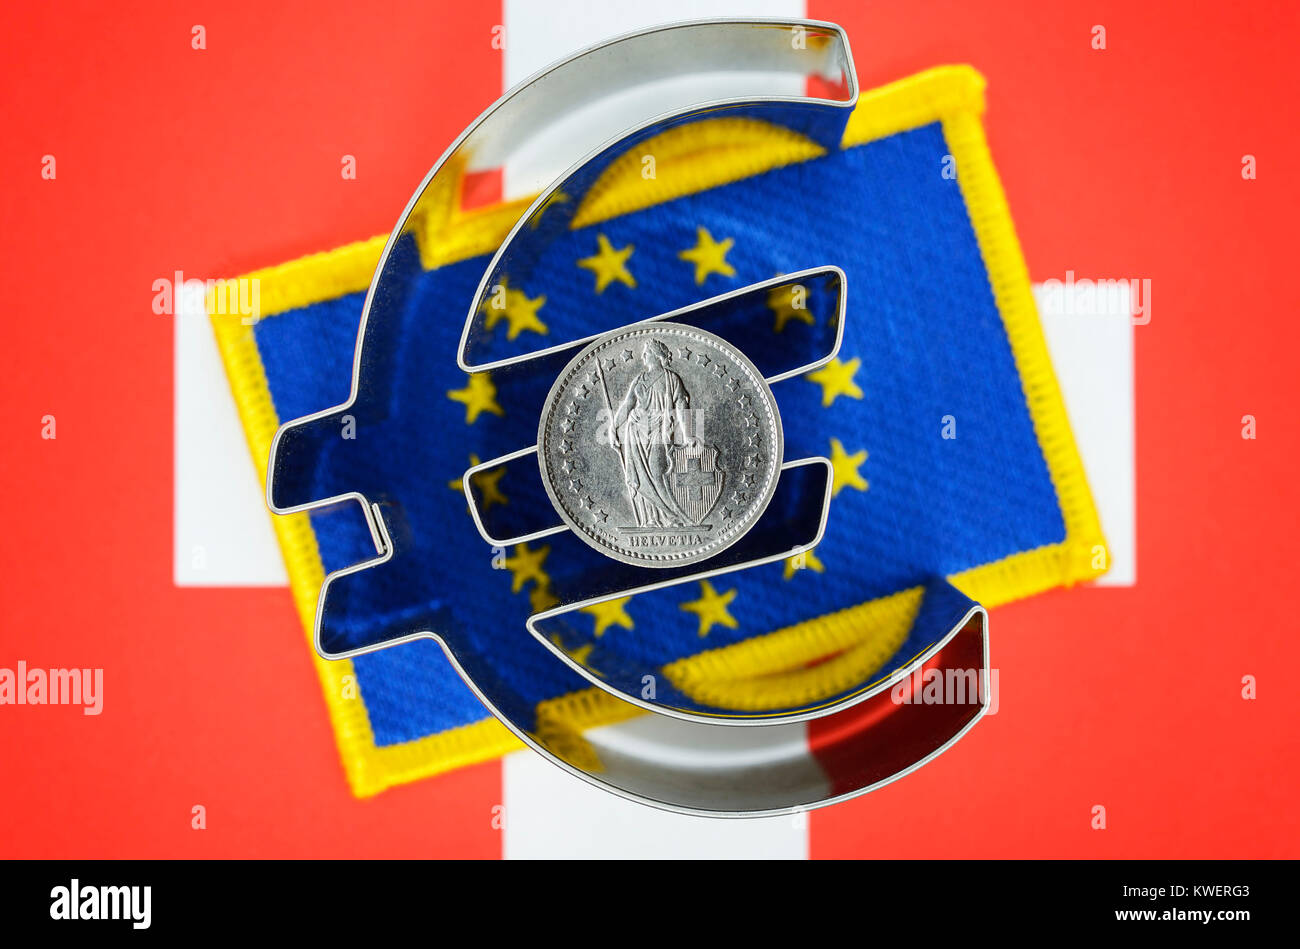 Le franc suisse, Suisse et drapeau eurosign drapeau de l'UE, fin de la franc-moins, bien entendu, de l'euro, Schweizer Franken auf Eurozeichen, Schweiz- und E Banque D'Images